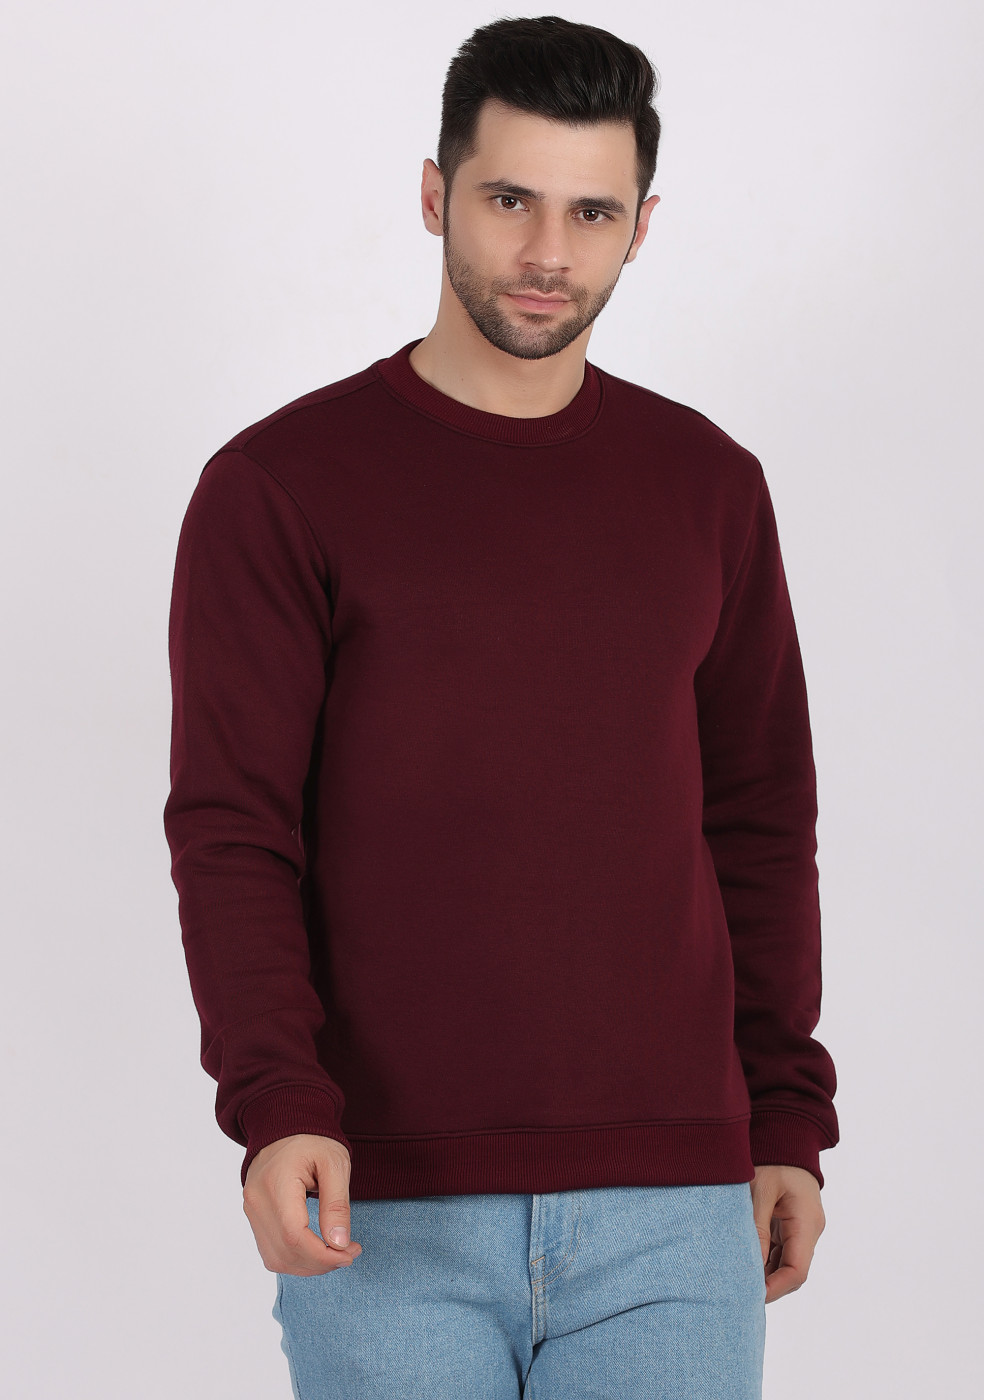 HUKH Wine Color Sweatshirt For Men